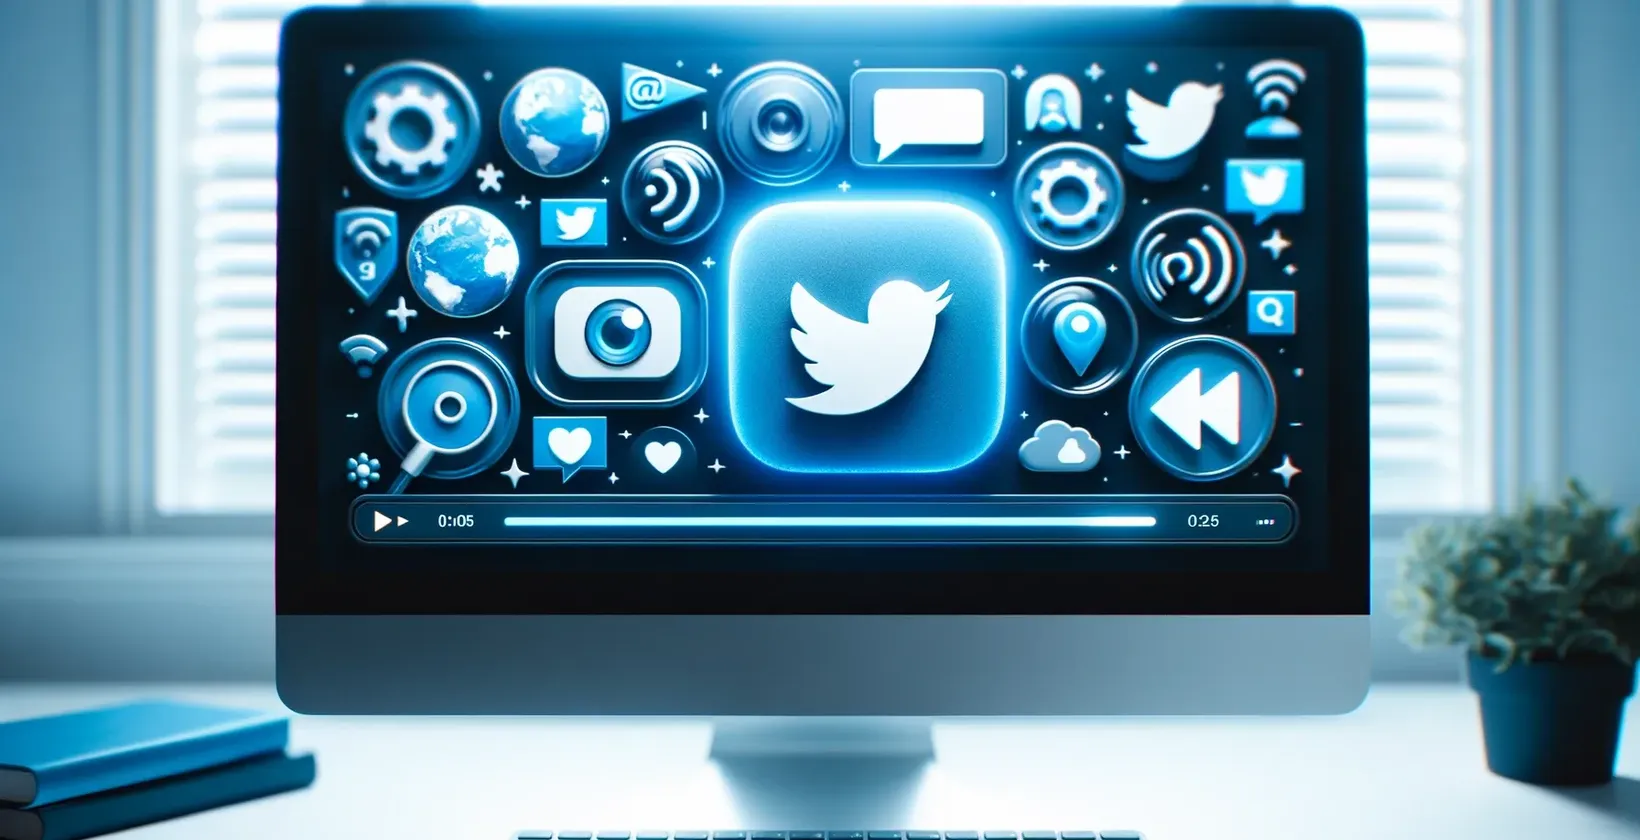 Twitter Надписи на видеоклипове, показвани на монитор с икони, подчертаващи глобалната свързаност и медийните контроли